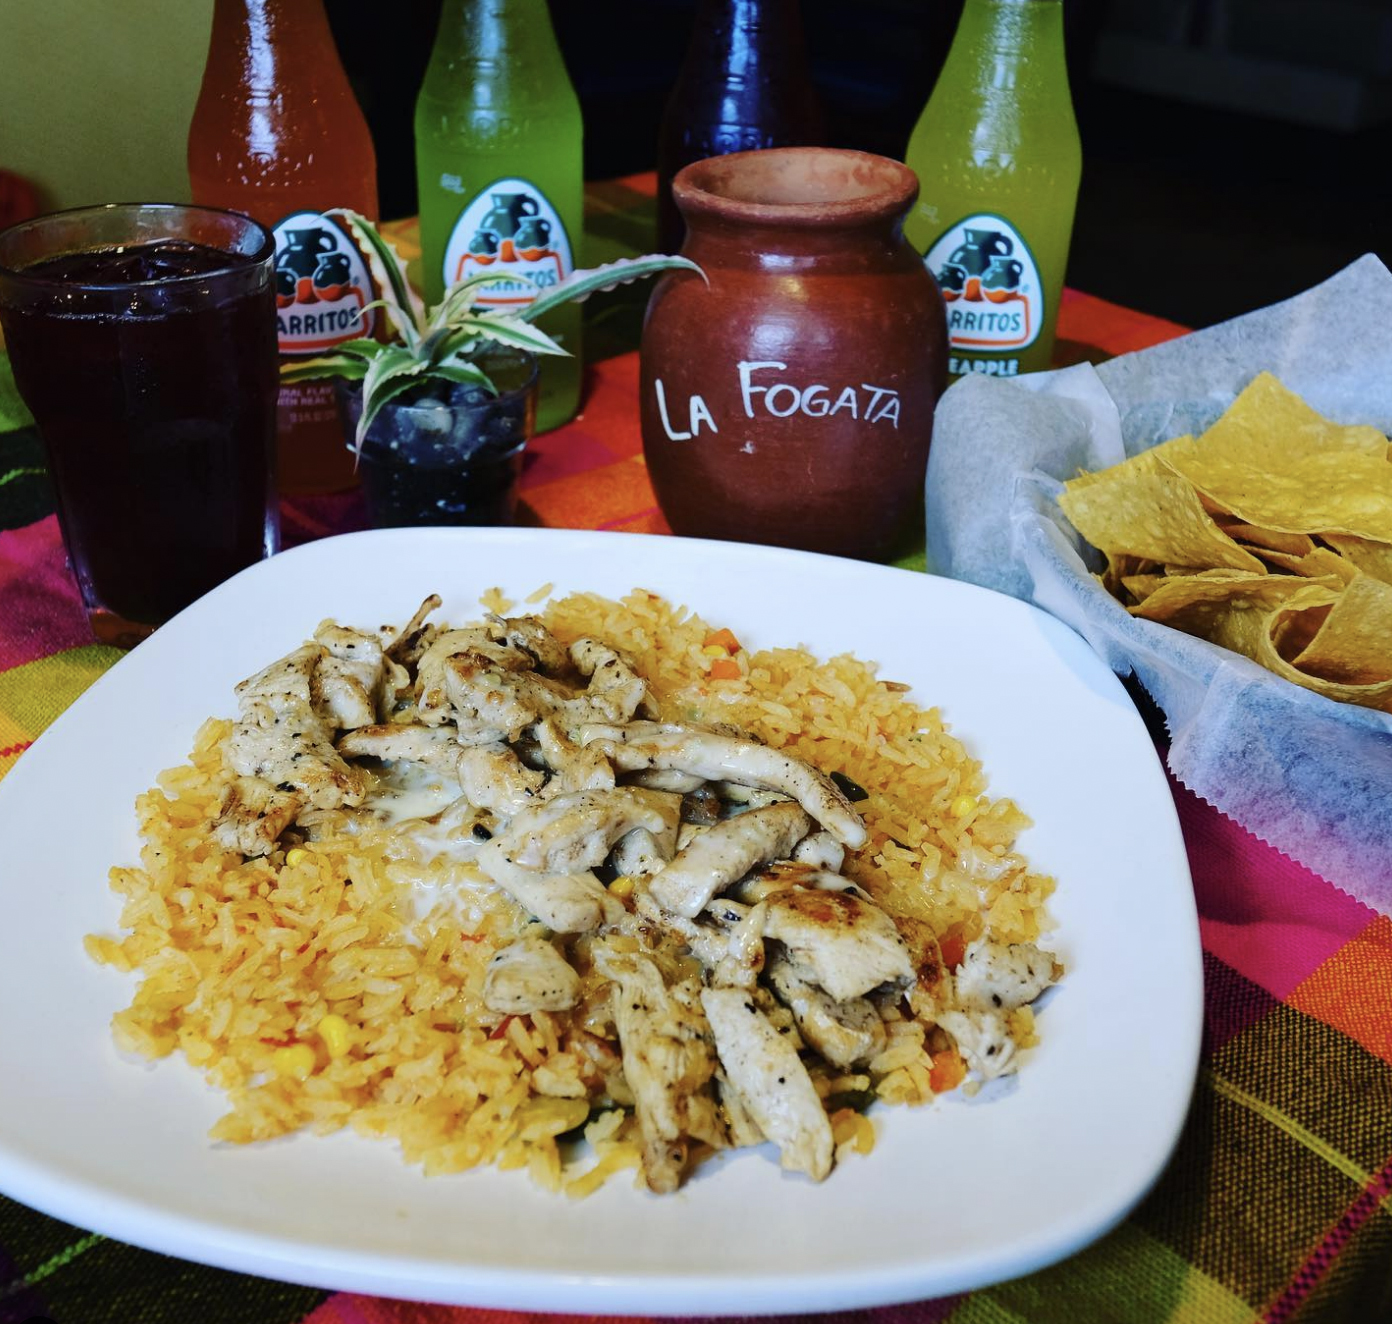 Menus, La Fogata Mexican Restaurant Kitty Hawk